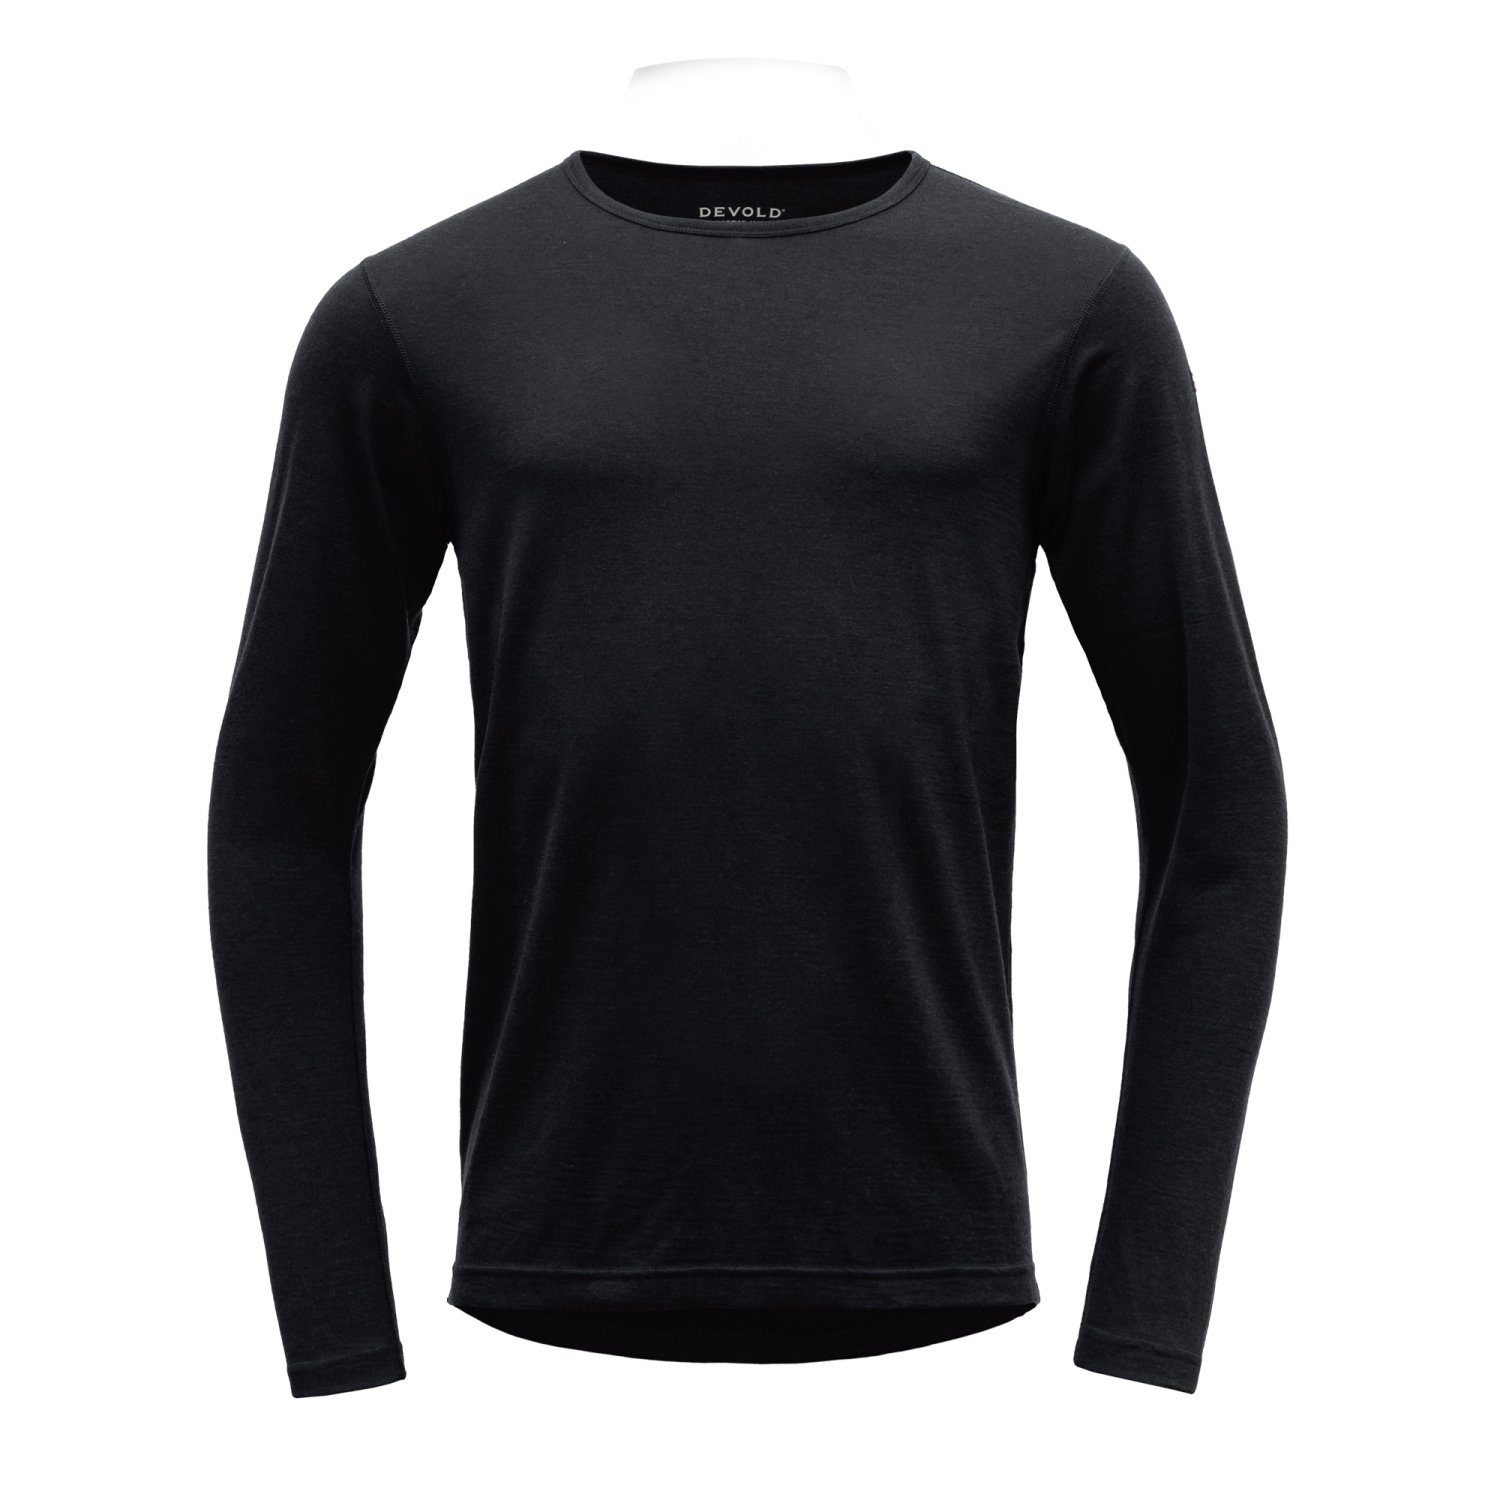 Herren Merinowolle Funktionsshirt Jakta Black aus 200g/m² Devold Devold Shirt